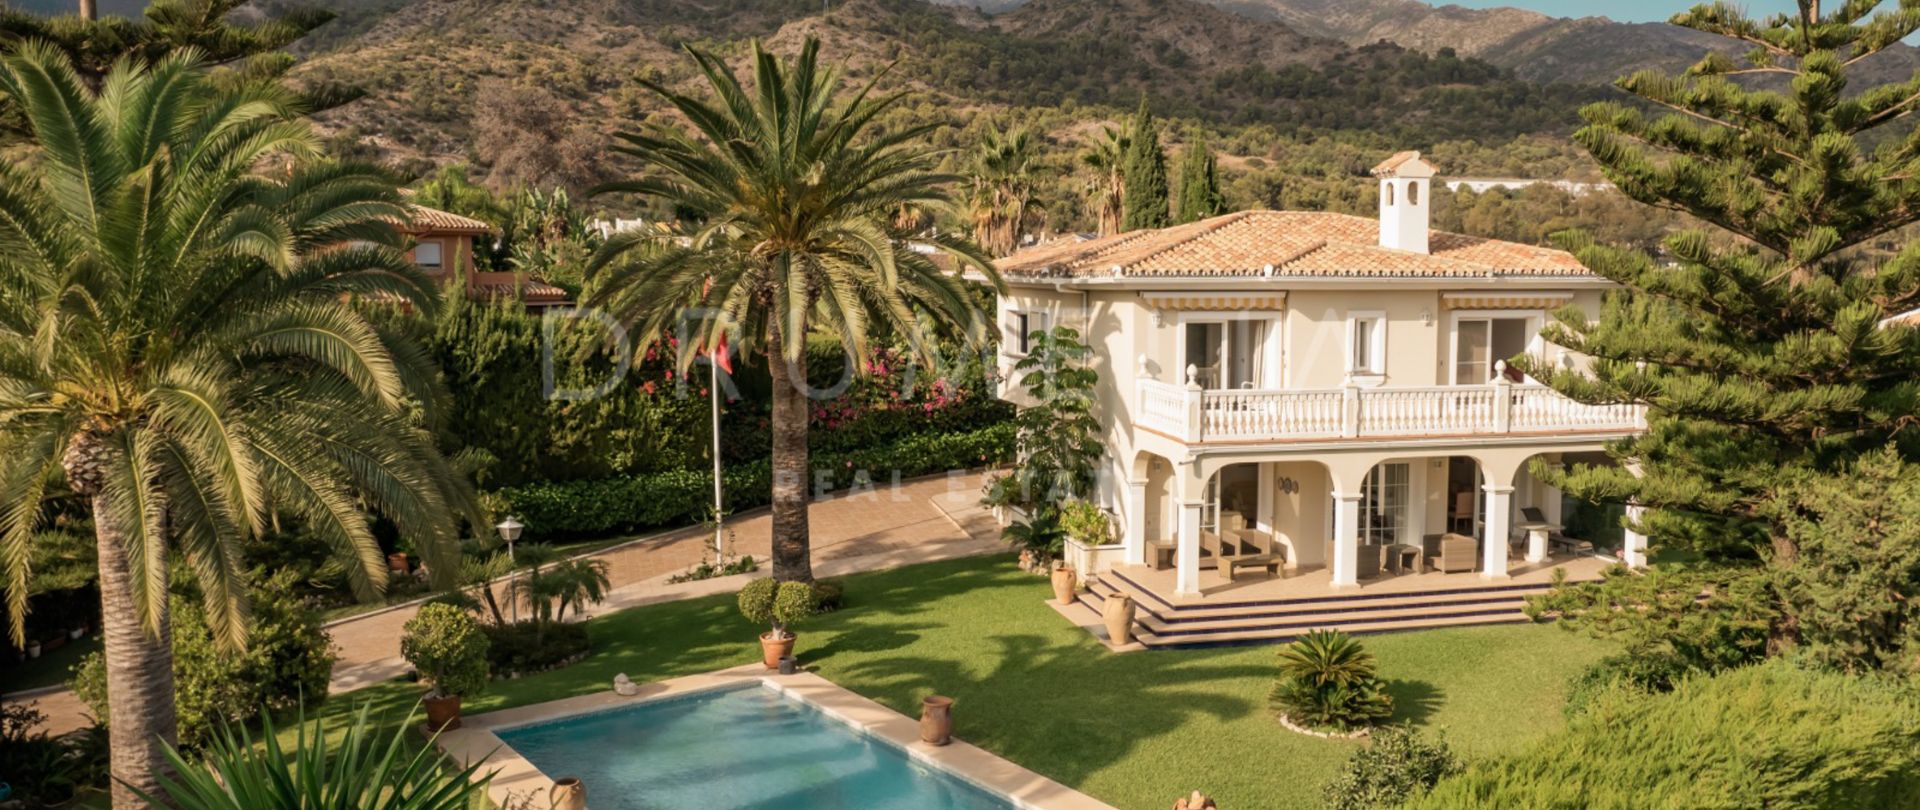 Élégante villa haut de gamme de style méditerranéen dans la belle ville de Marbella